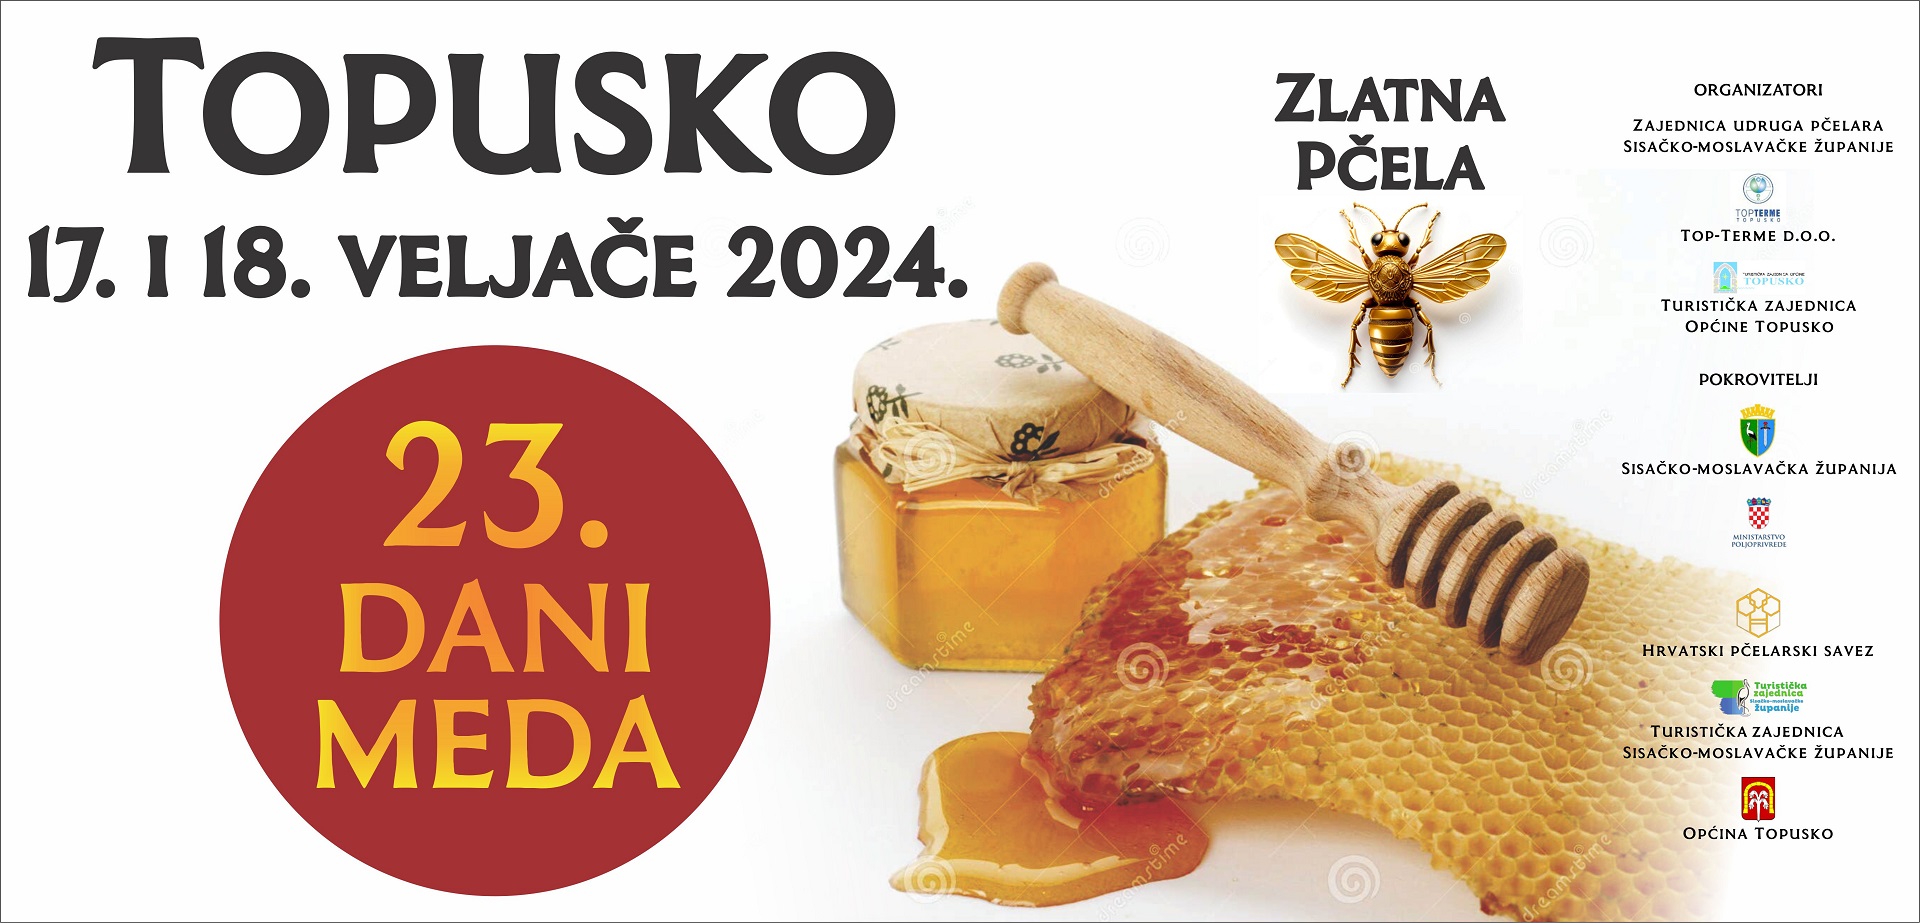 23. DANI MEDA “ZLATNA PČELA” – TOPUSKO 2024.